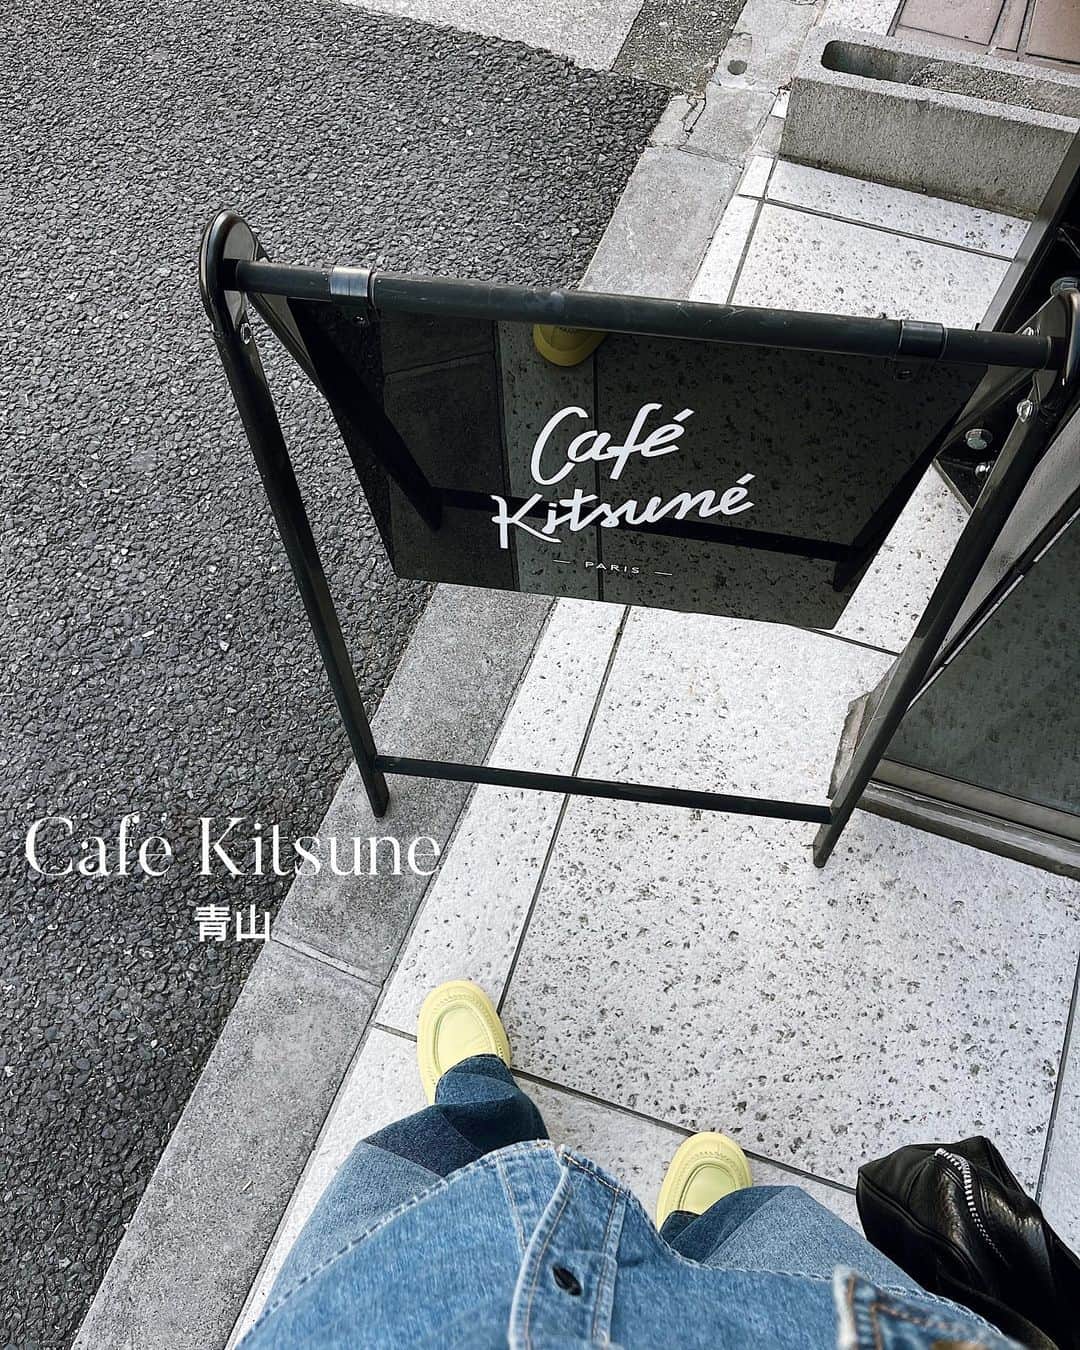 C A F E L O V E Rのインスタグラム：「Cafe Kitsune Aoyama // 青山 カフェ キツネはメゾンキツネの世界観を味わえる貴重なお店☕️  コーヒーやクッキー、ケーキなど、全てにこだわりが感じられるカフェ🦊  青山店は店内も広く、ゆっくりくつろげる空間💫 渋谷と京都にも店舗あり  モダンで落ち着いた雰囲気なので1人でも入りやすく、 表参道ショッピングの休憩にもおすすめ☕️ ------------------------------------- ◼︎オーダー カフェラテ¥750 自家焙煎されたオリジナルブレンドのコーヒーを中心に、日本茶ベース、アルコールドリンクもあり  ◼︎広さ 約50席  ◼︎ペット テラス席のみ可  ◼︎テイクアウト 可  ◼︎最寄駅 表参道駅A4出口より徒歩５分ほど ------------------------------------- @cafekitsune  #cafekitsune #カフェキツネ ㅤ ※営業状況やメニューなど詳細は、 各アカウントでご確認ください」